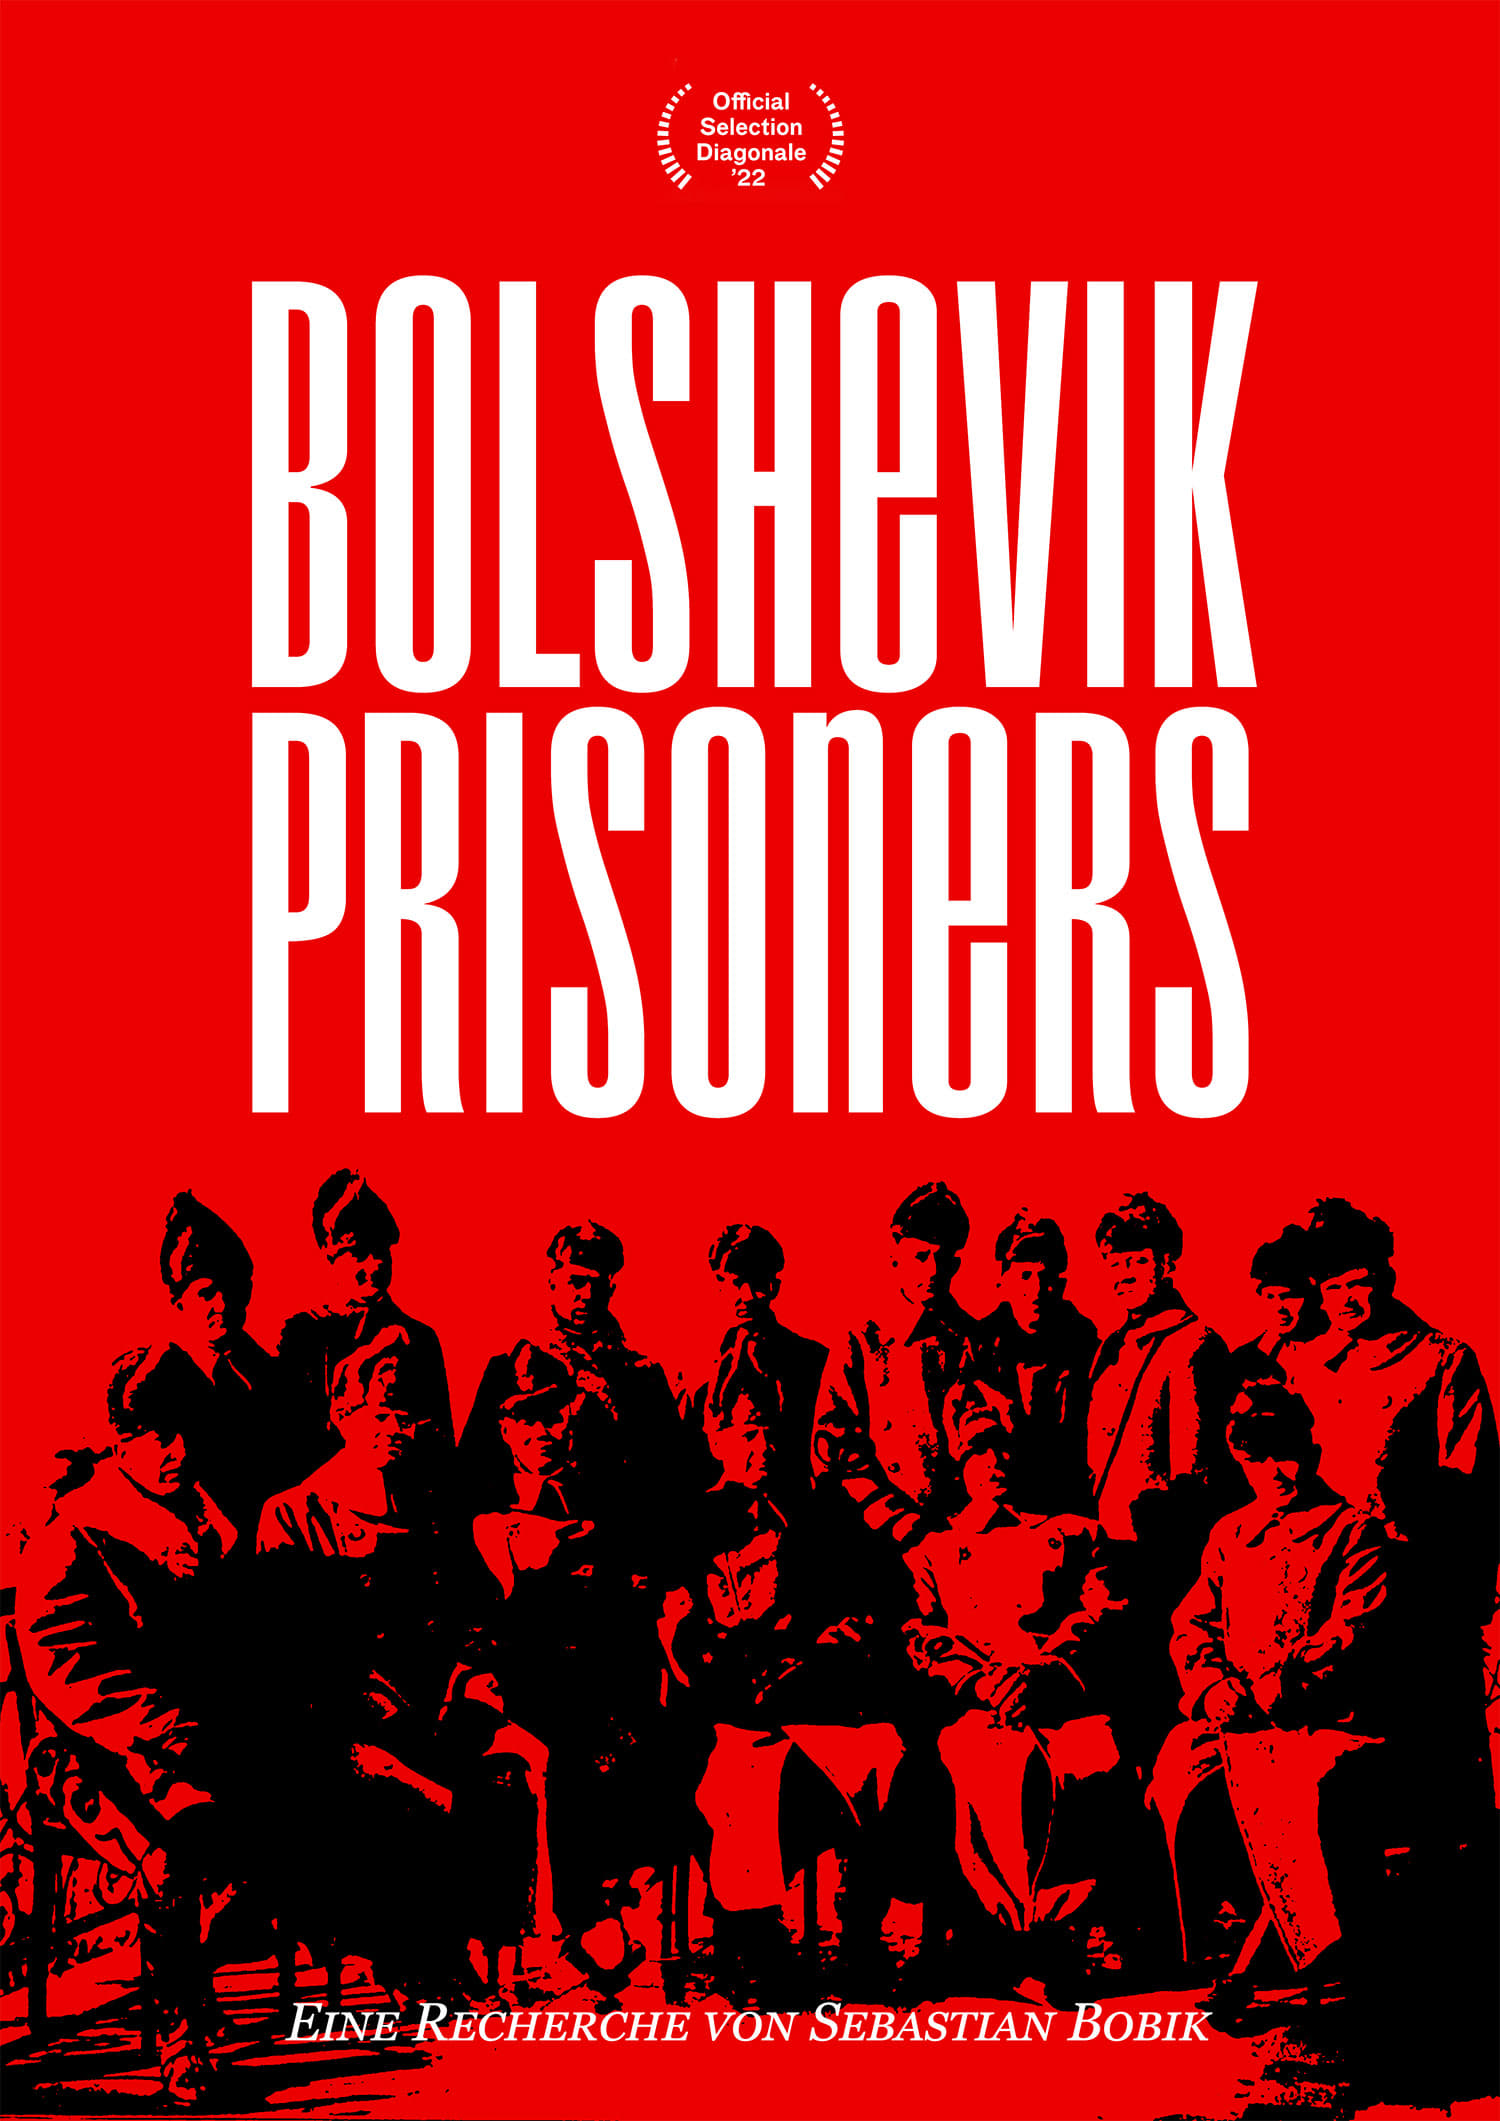 Bolshevik Prisoners